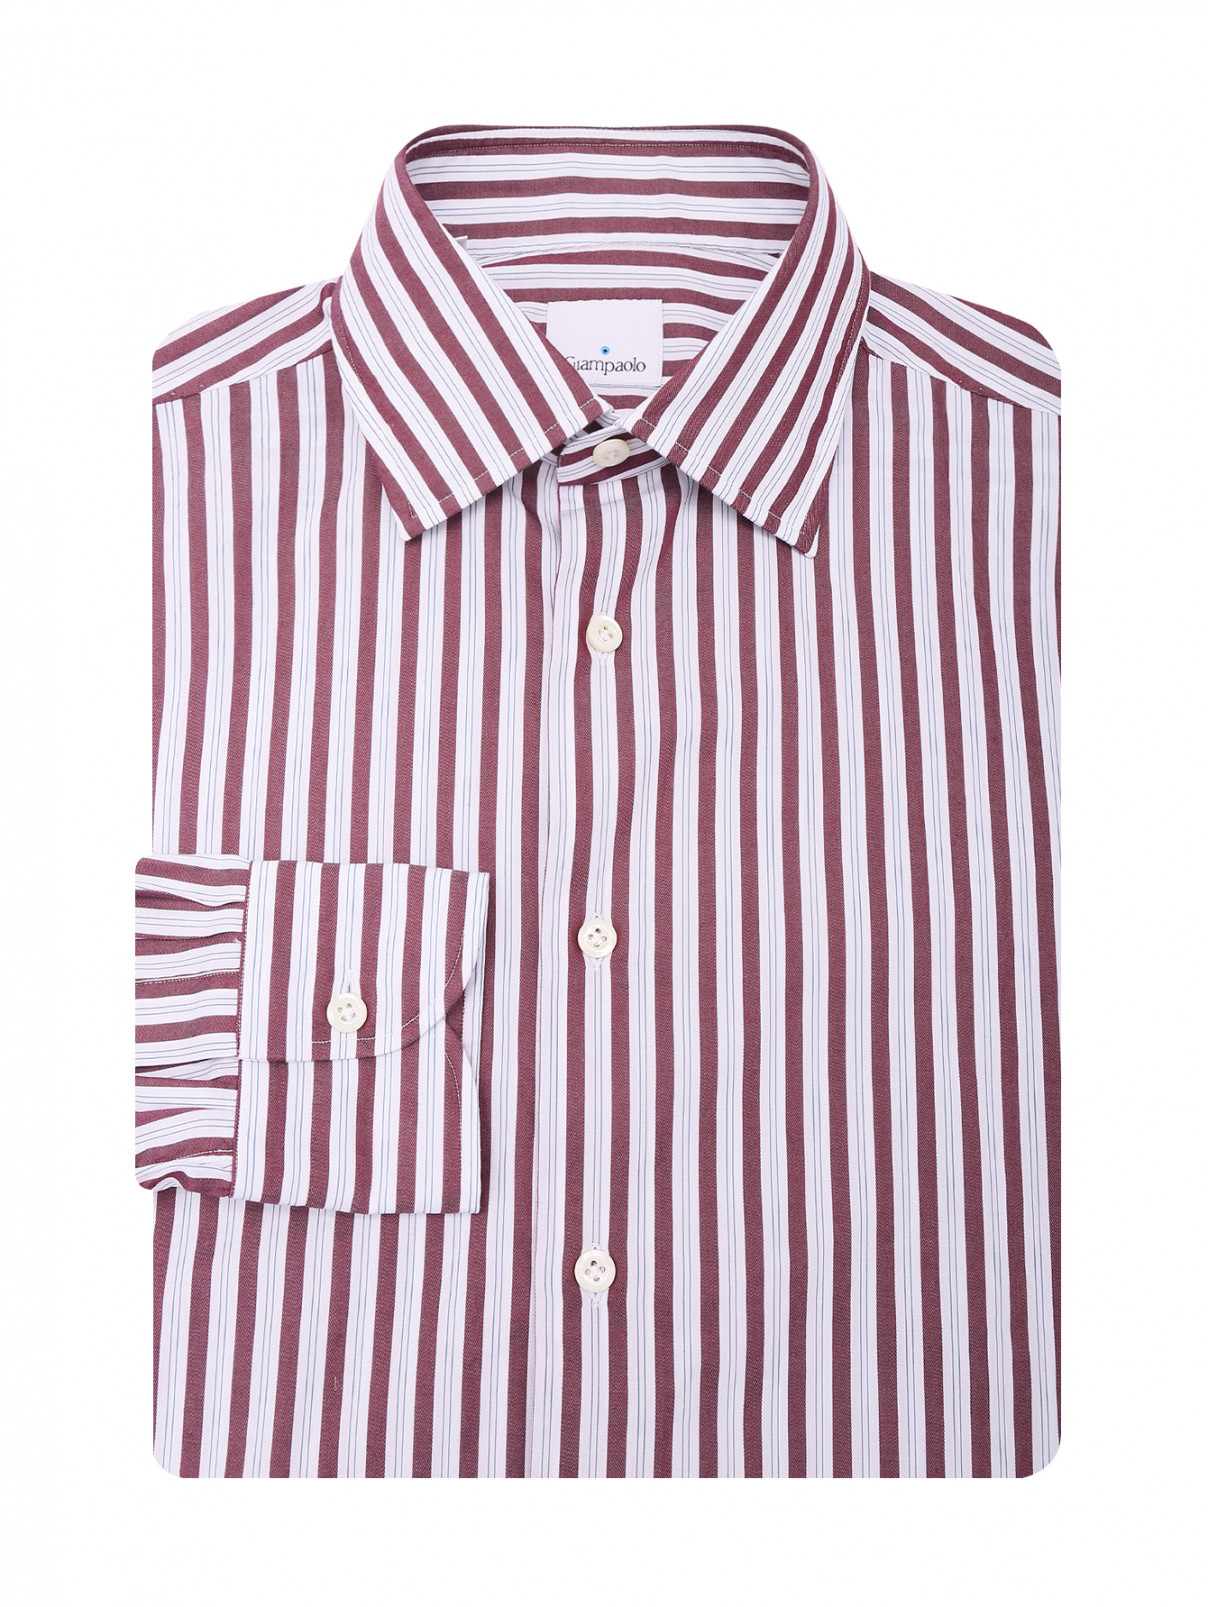 Рубашка из хлопка с узором полоска Giampaolo  –  Общий вид  – Цвет:  Узор